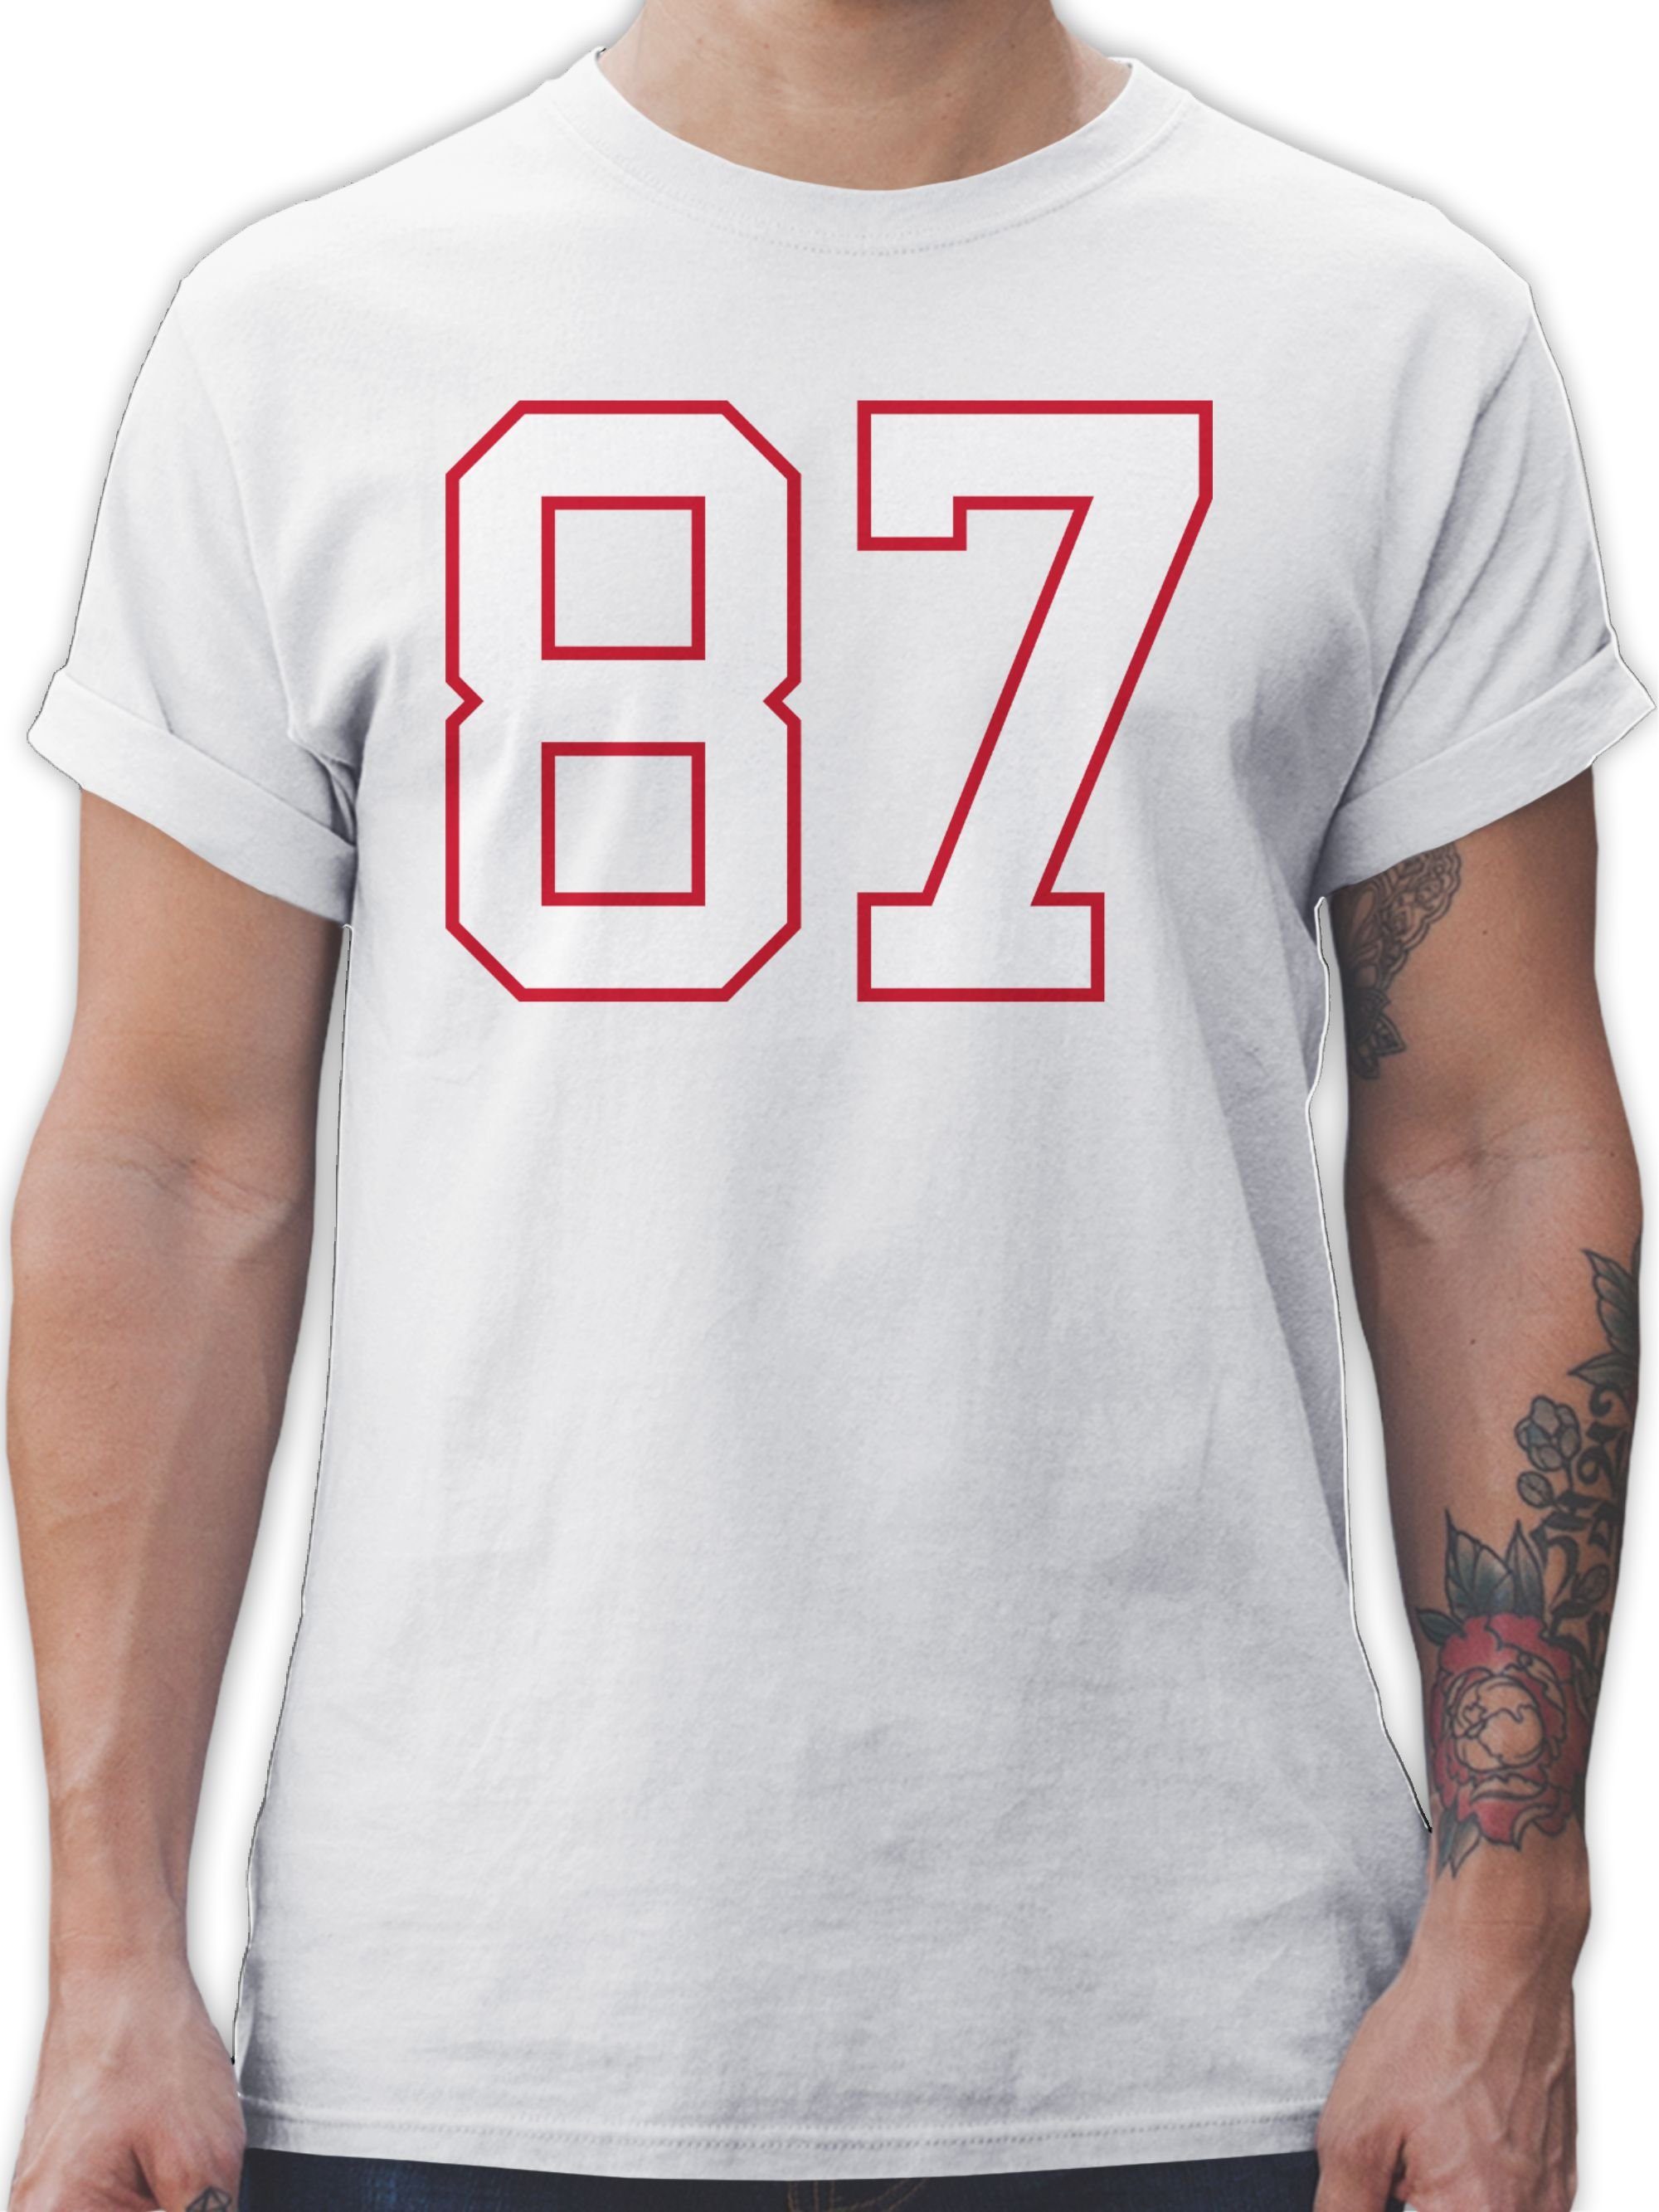 Shirtracer T-Shirt Football New England 87 American Football NFL 3 Weiß